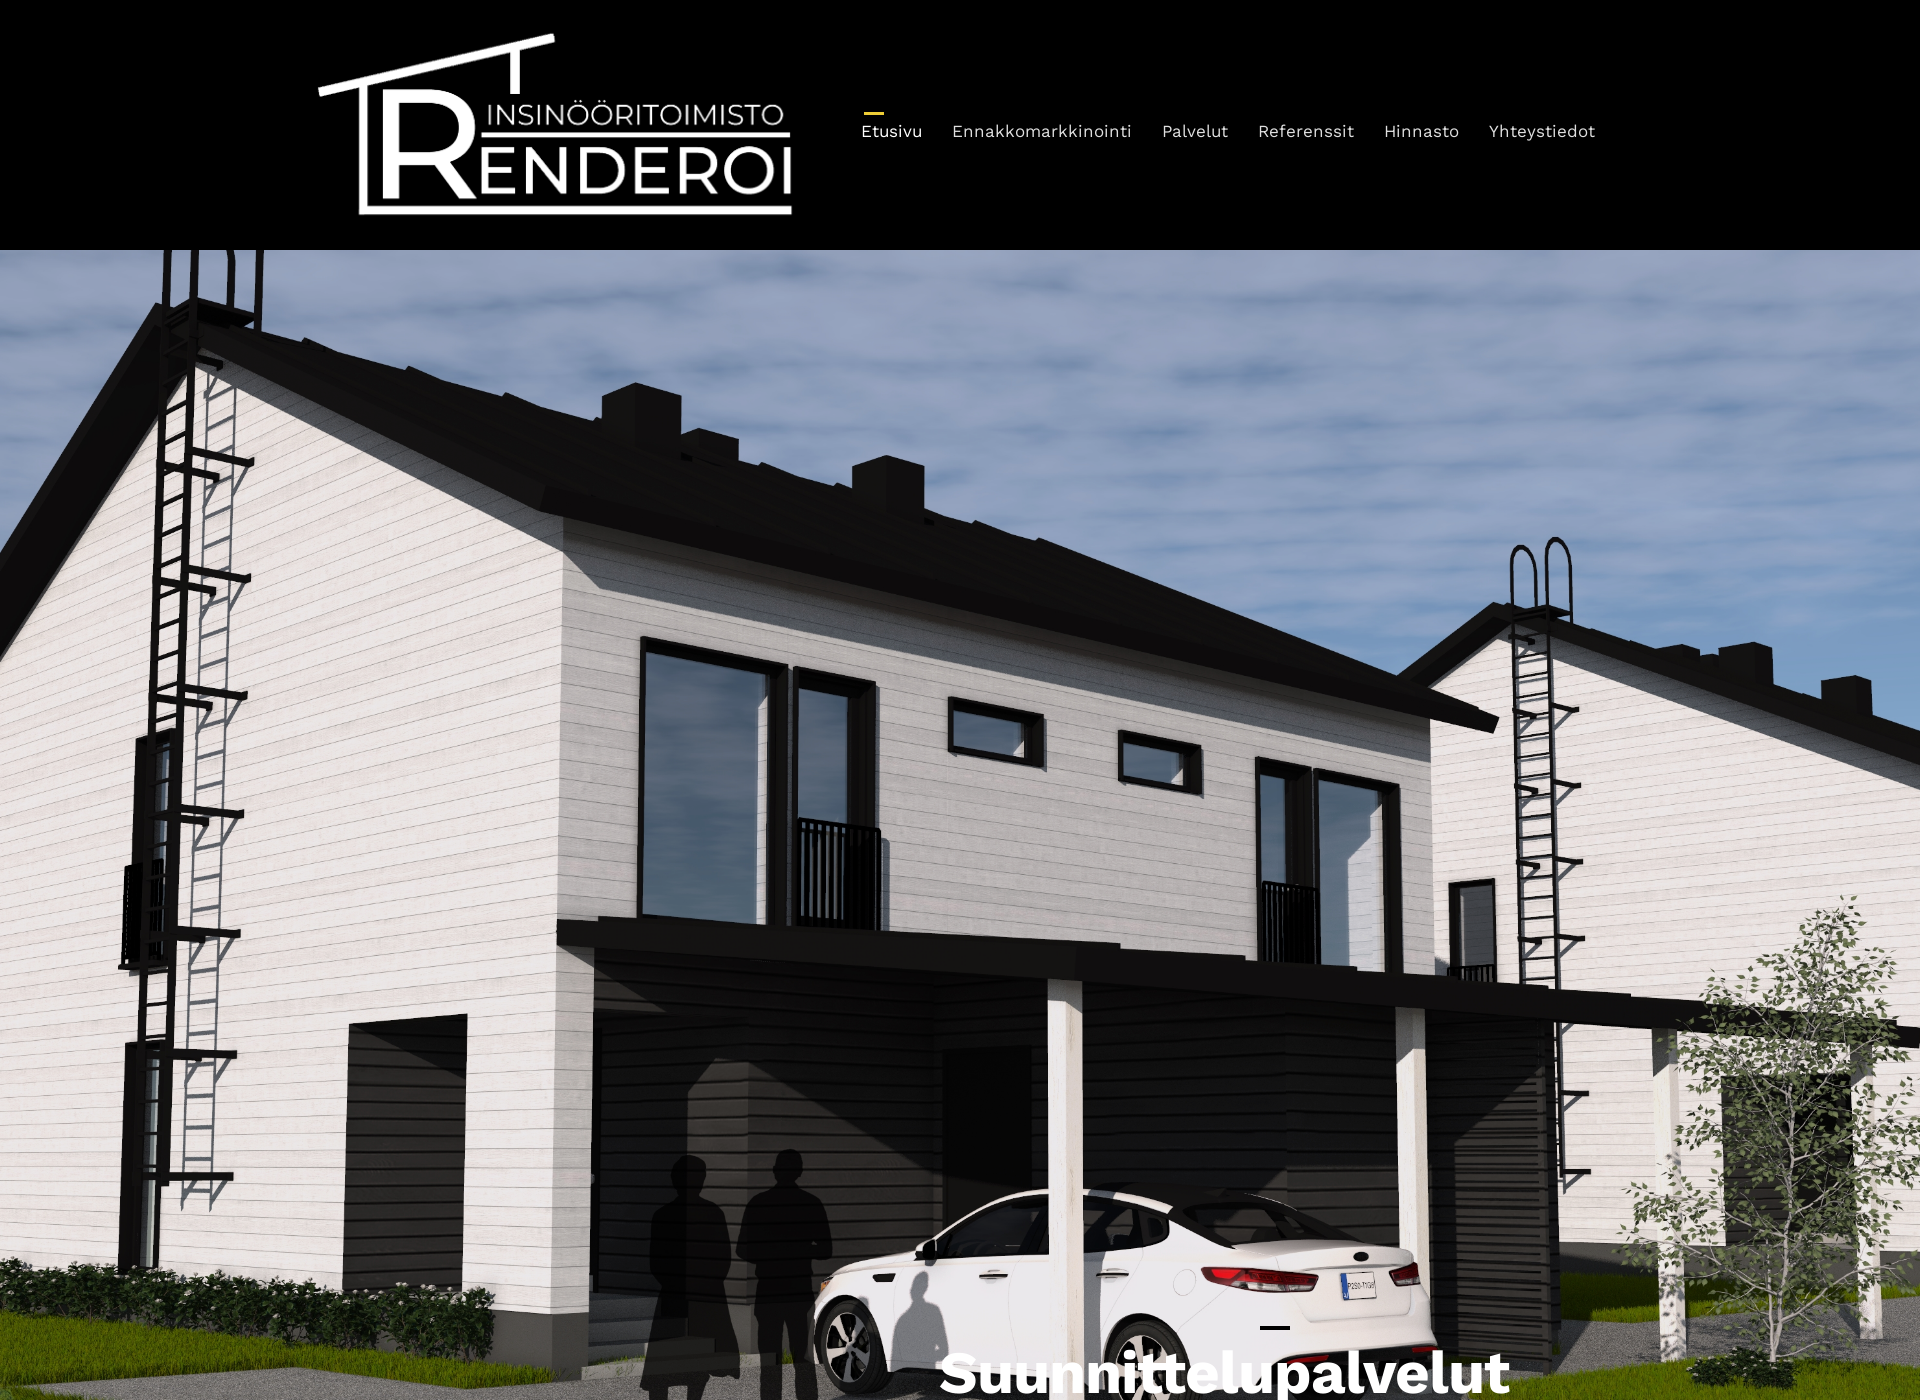 Screenshot for renderoi.fi